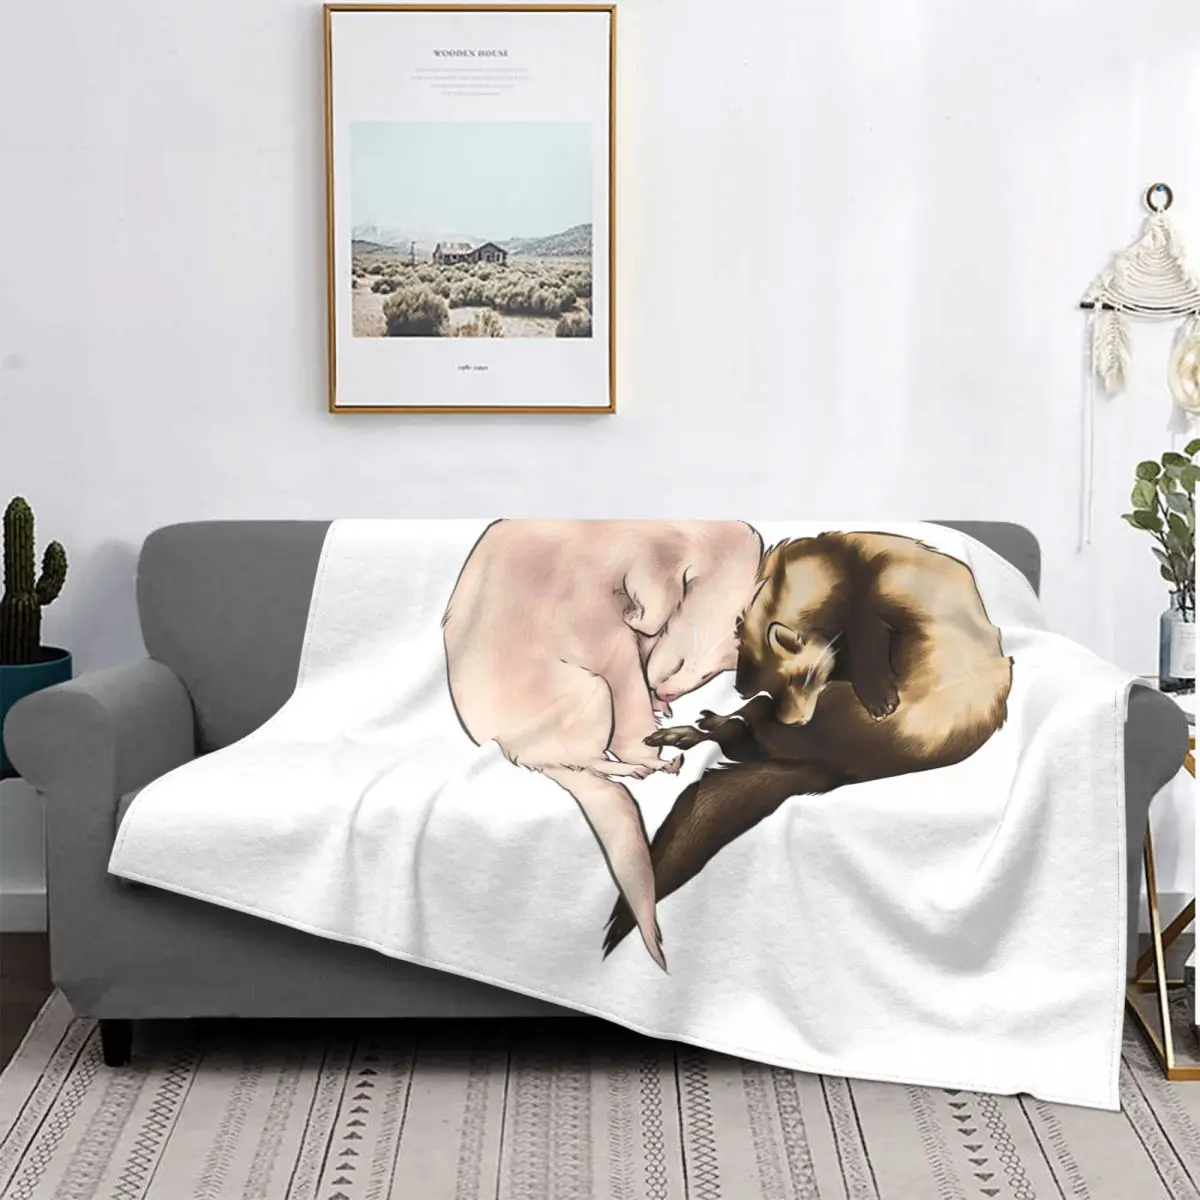 

Одеяло для домашнего декора, приятное для кожи, комфортное, легкое, не скатывается, создает уютную атмосферу, в минималистическом стиле, с милым мультяшным рисунком